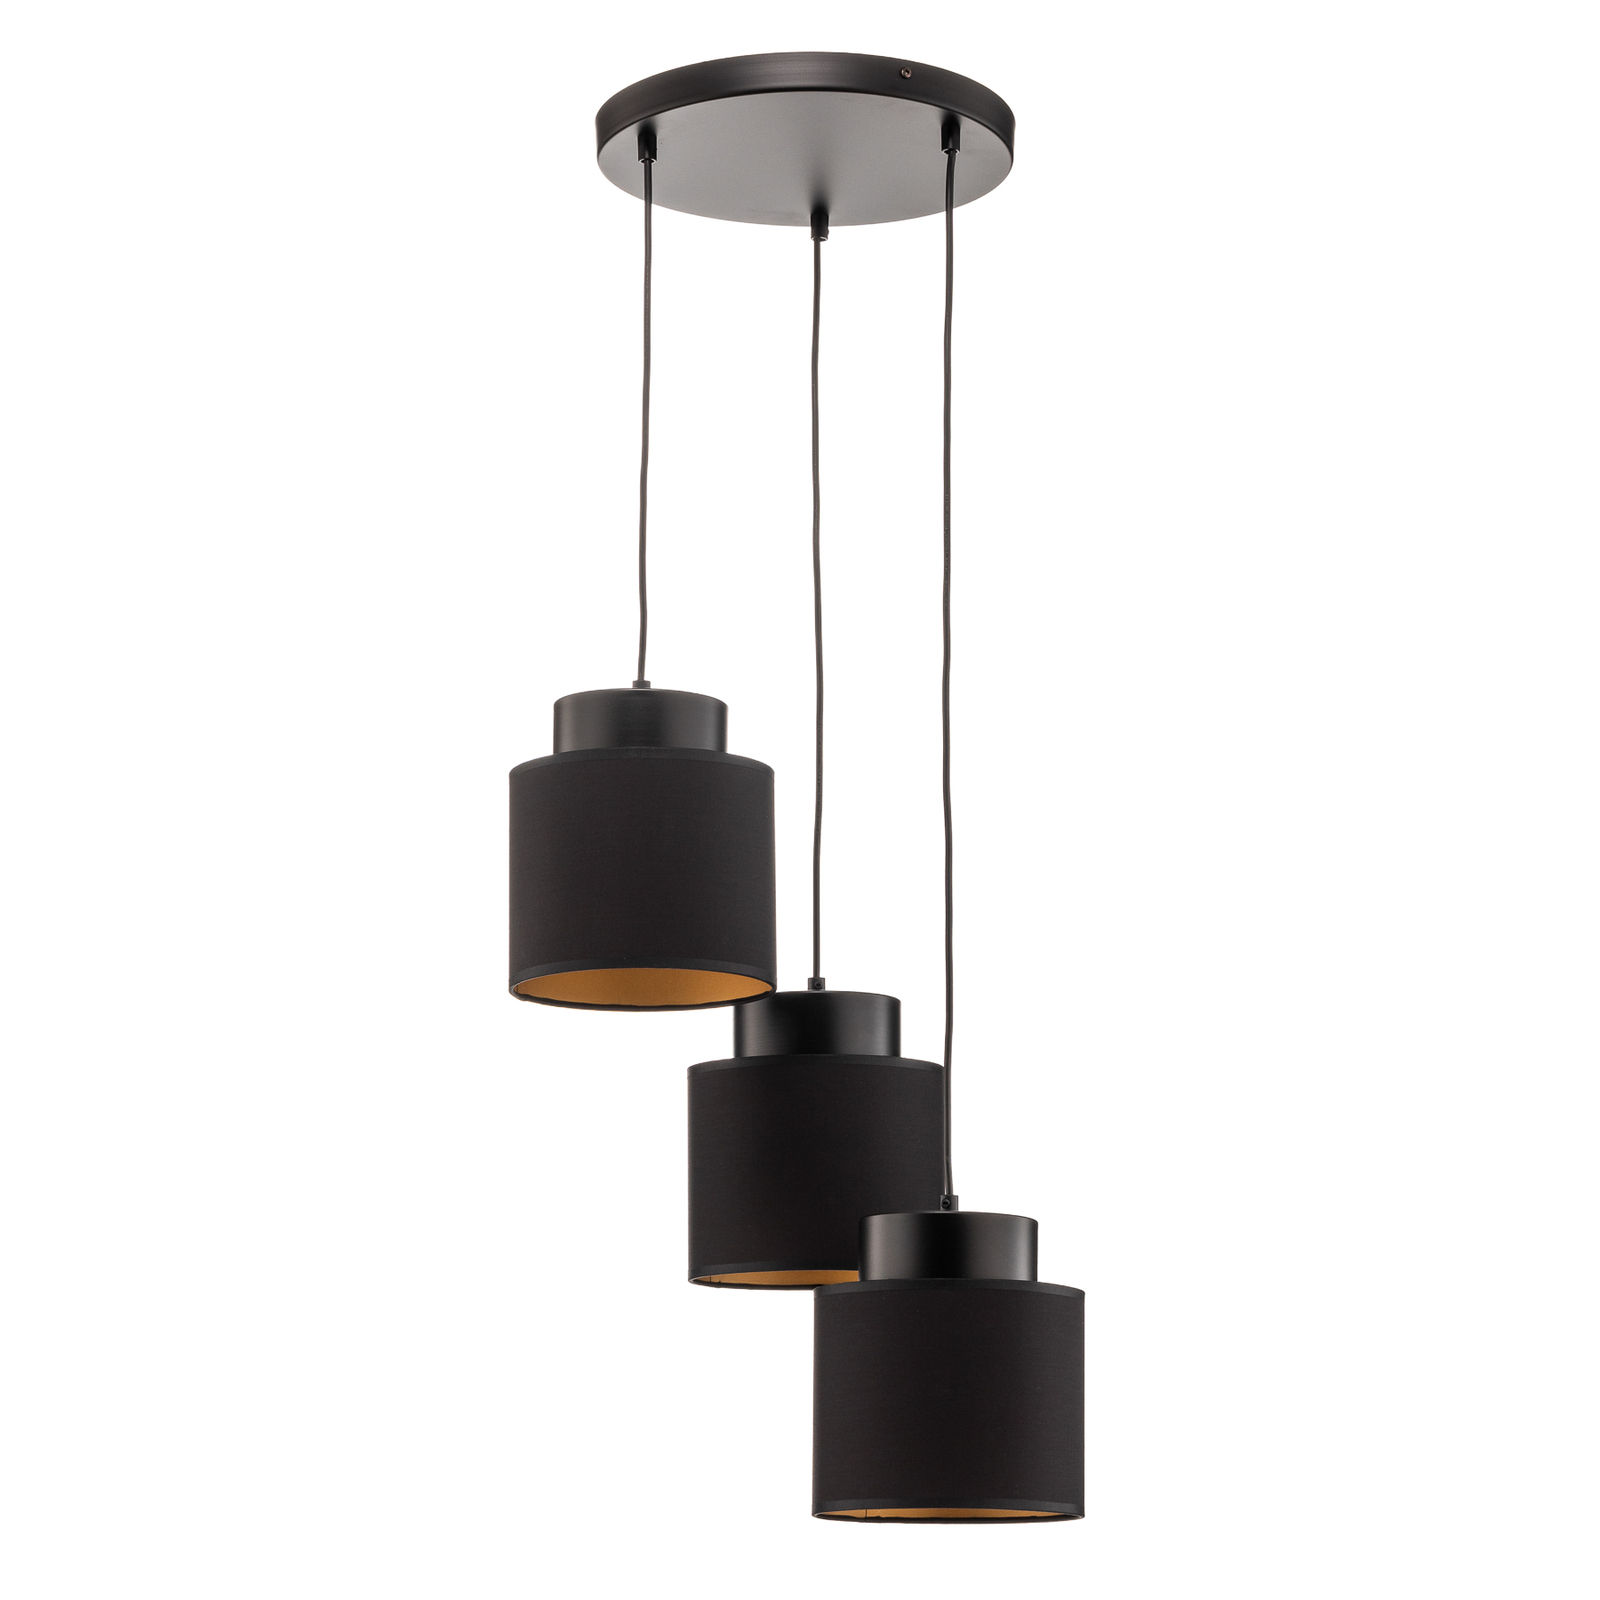 Hanglamp Soho cilindervormig rond 3flzwart/goud